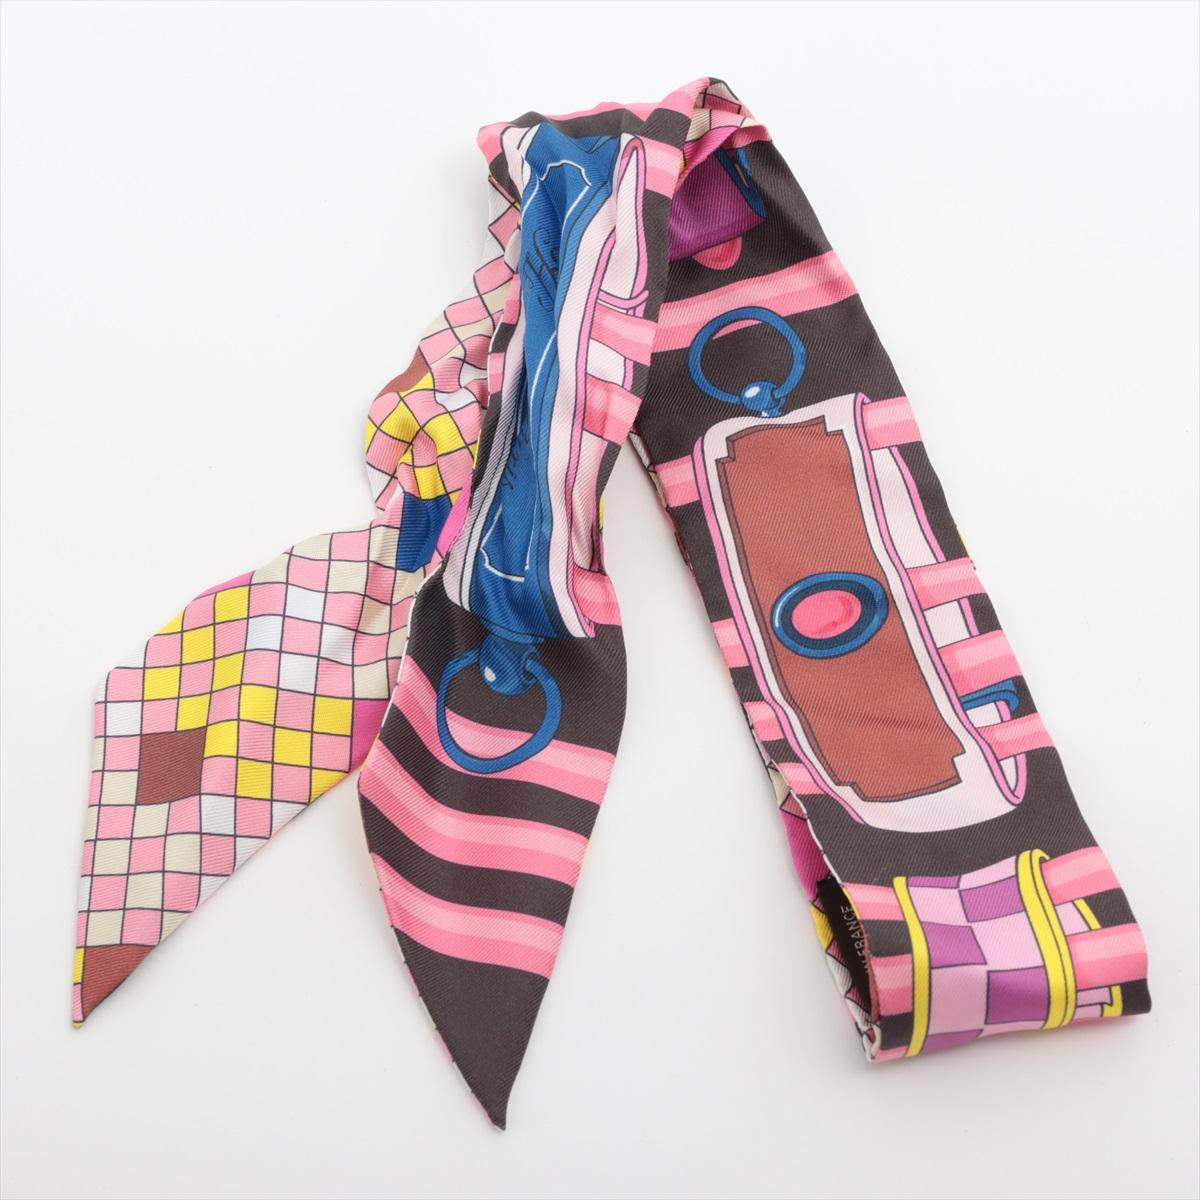 Die Hermès Twilly Colliers de Chiens Remix in Pink ist ein lebhaftes und verspieltes Accessoire, das jedem Ensemble einen Hauch von Laune verleiht. Der Twilly-Schal ist aus luxuriösem Seiden-Twill gefertigt und zeigt ein auffälliges Design, das von